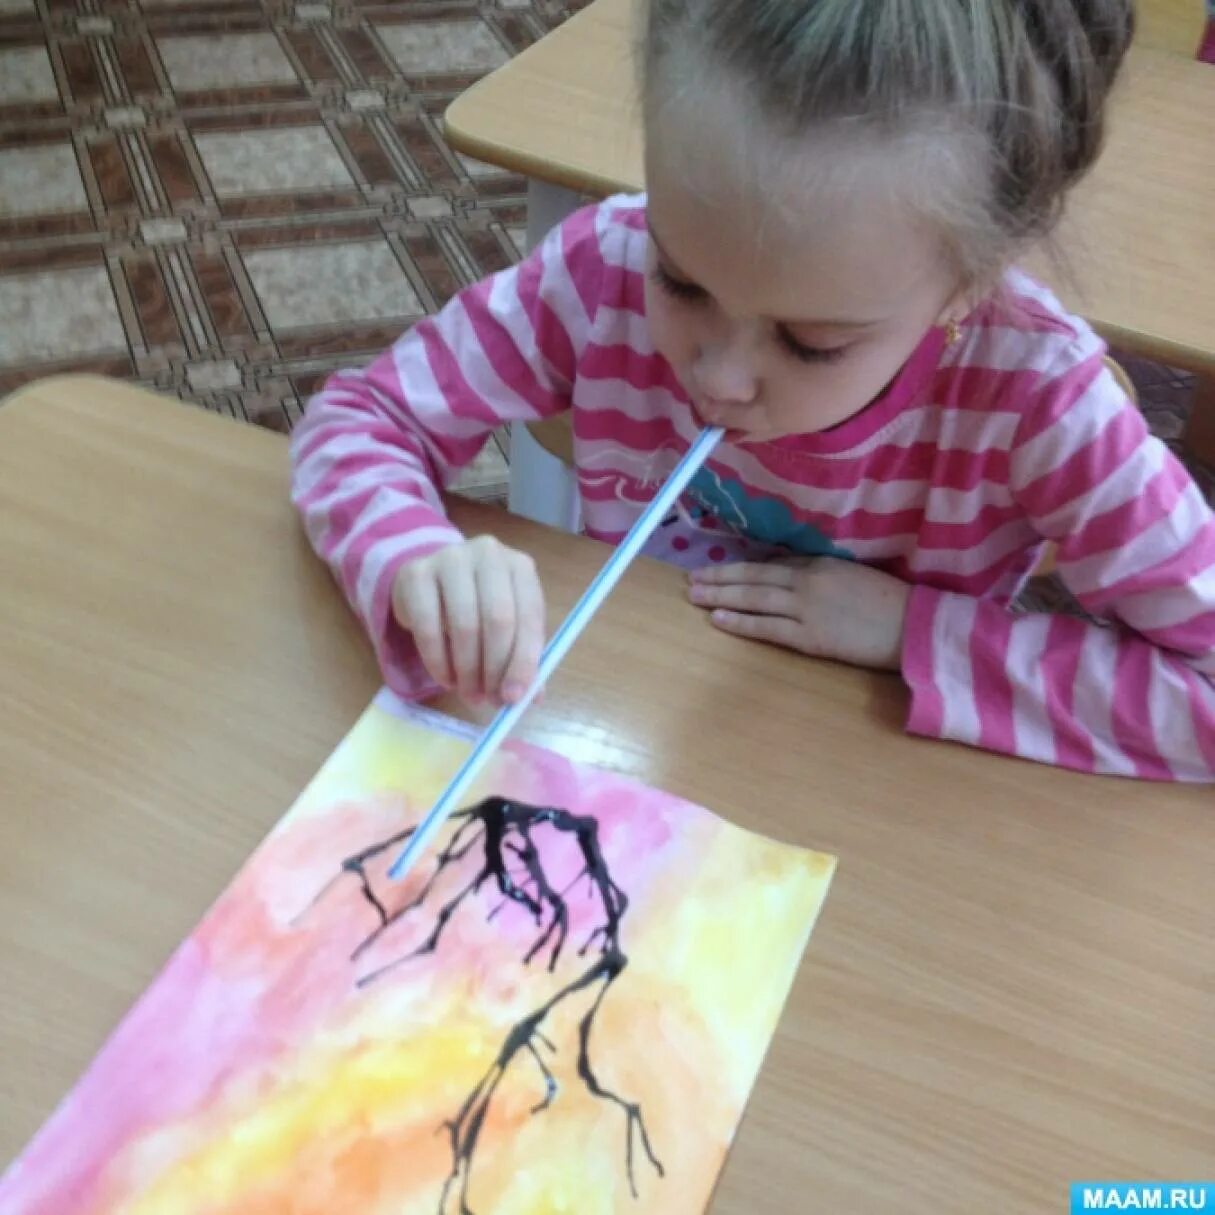 Дошкольное рисование занятия. Техники рисования для детей. Нестандартные техники рисования для дошкольников. Рисование трубочкой в детском саду. Нетрадиционное рисование для детей дошкольного возраста.